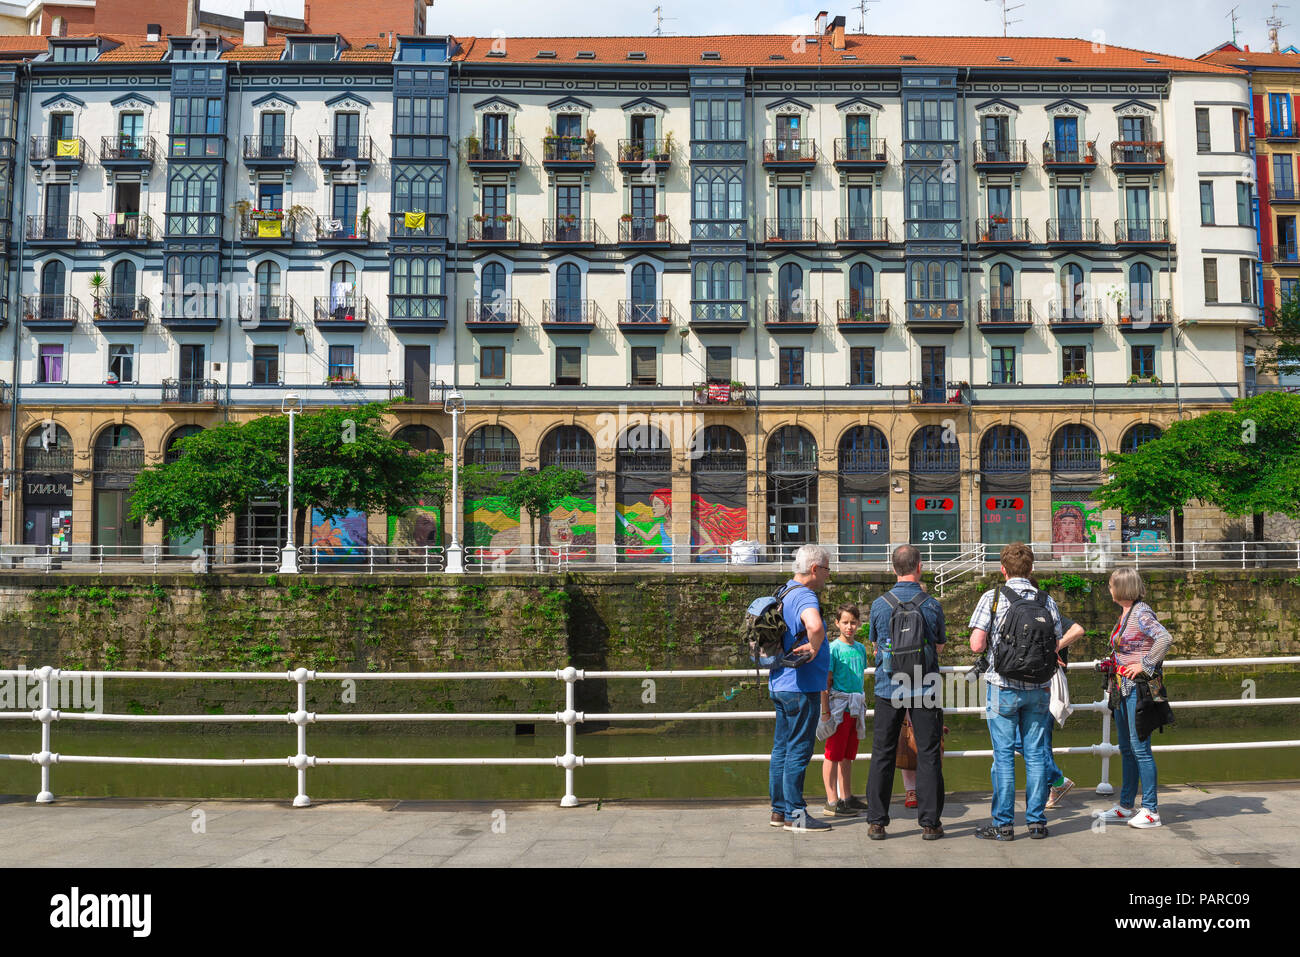 Bilbao Riverside Gebäude, Ansicht von Apartment Gebäuden entlang der South Bank der Rio Nervion (Ria de Bilbao) im Zentrum von Bilbao, Spanien. Stockfoto